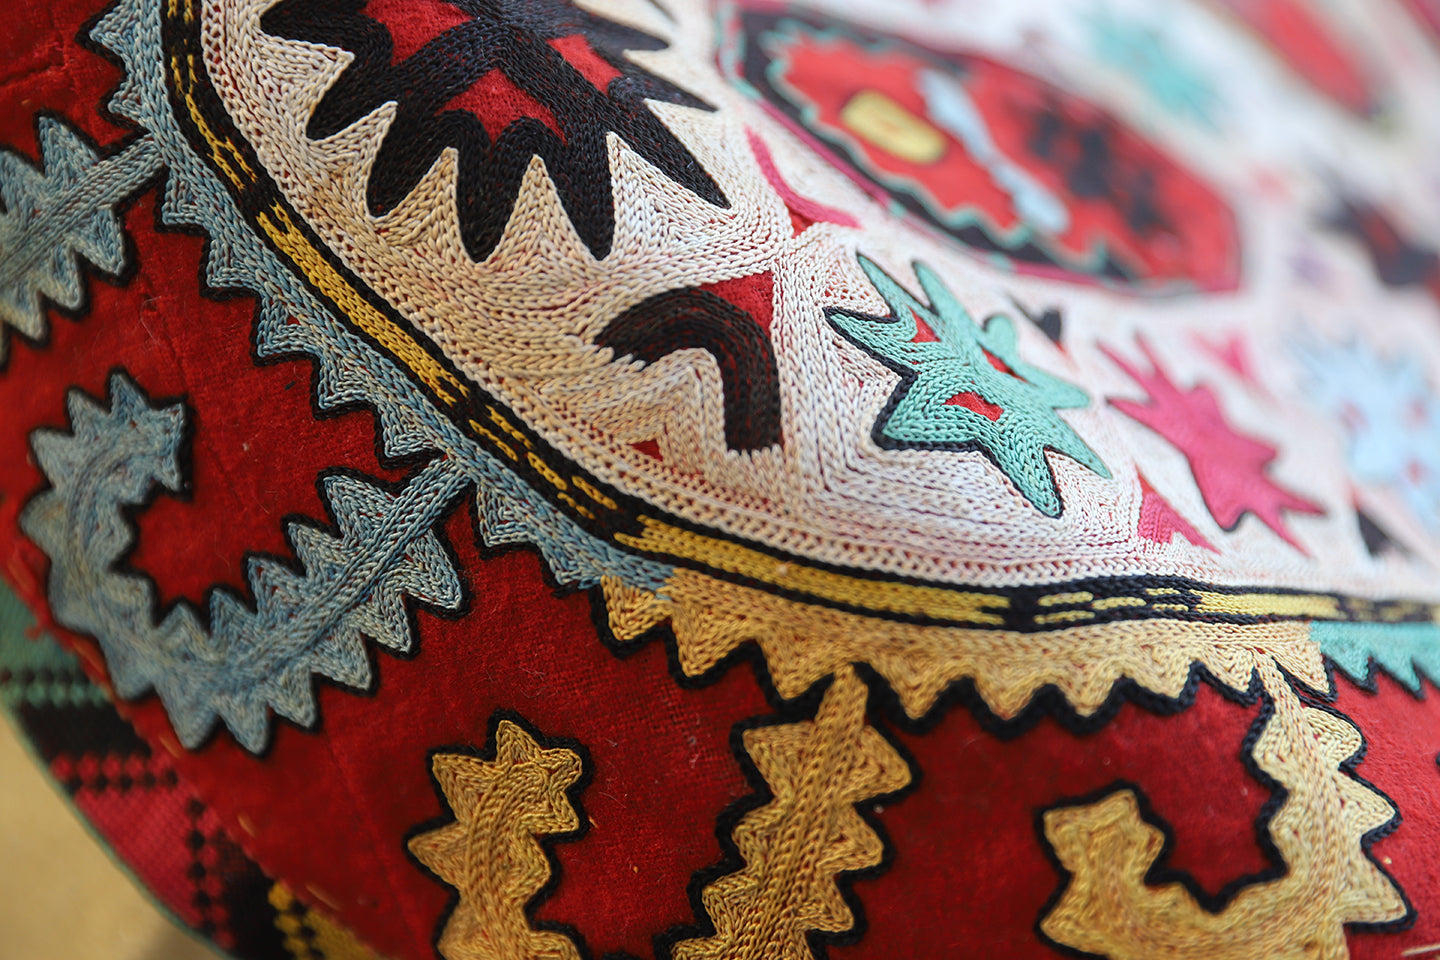 14"x21" Antique Uzbek Lakai Uut kap Ilgich embroidered Suzani